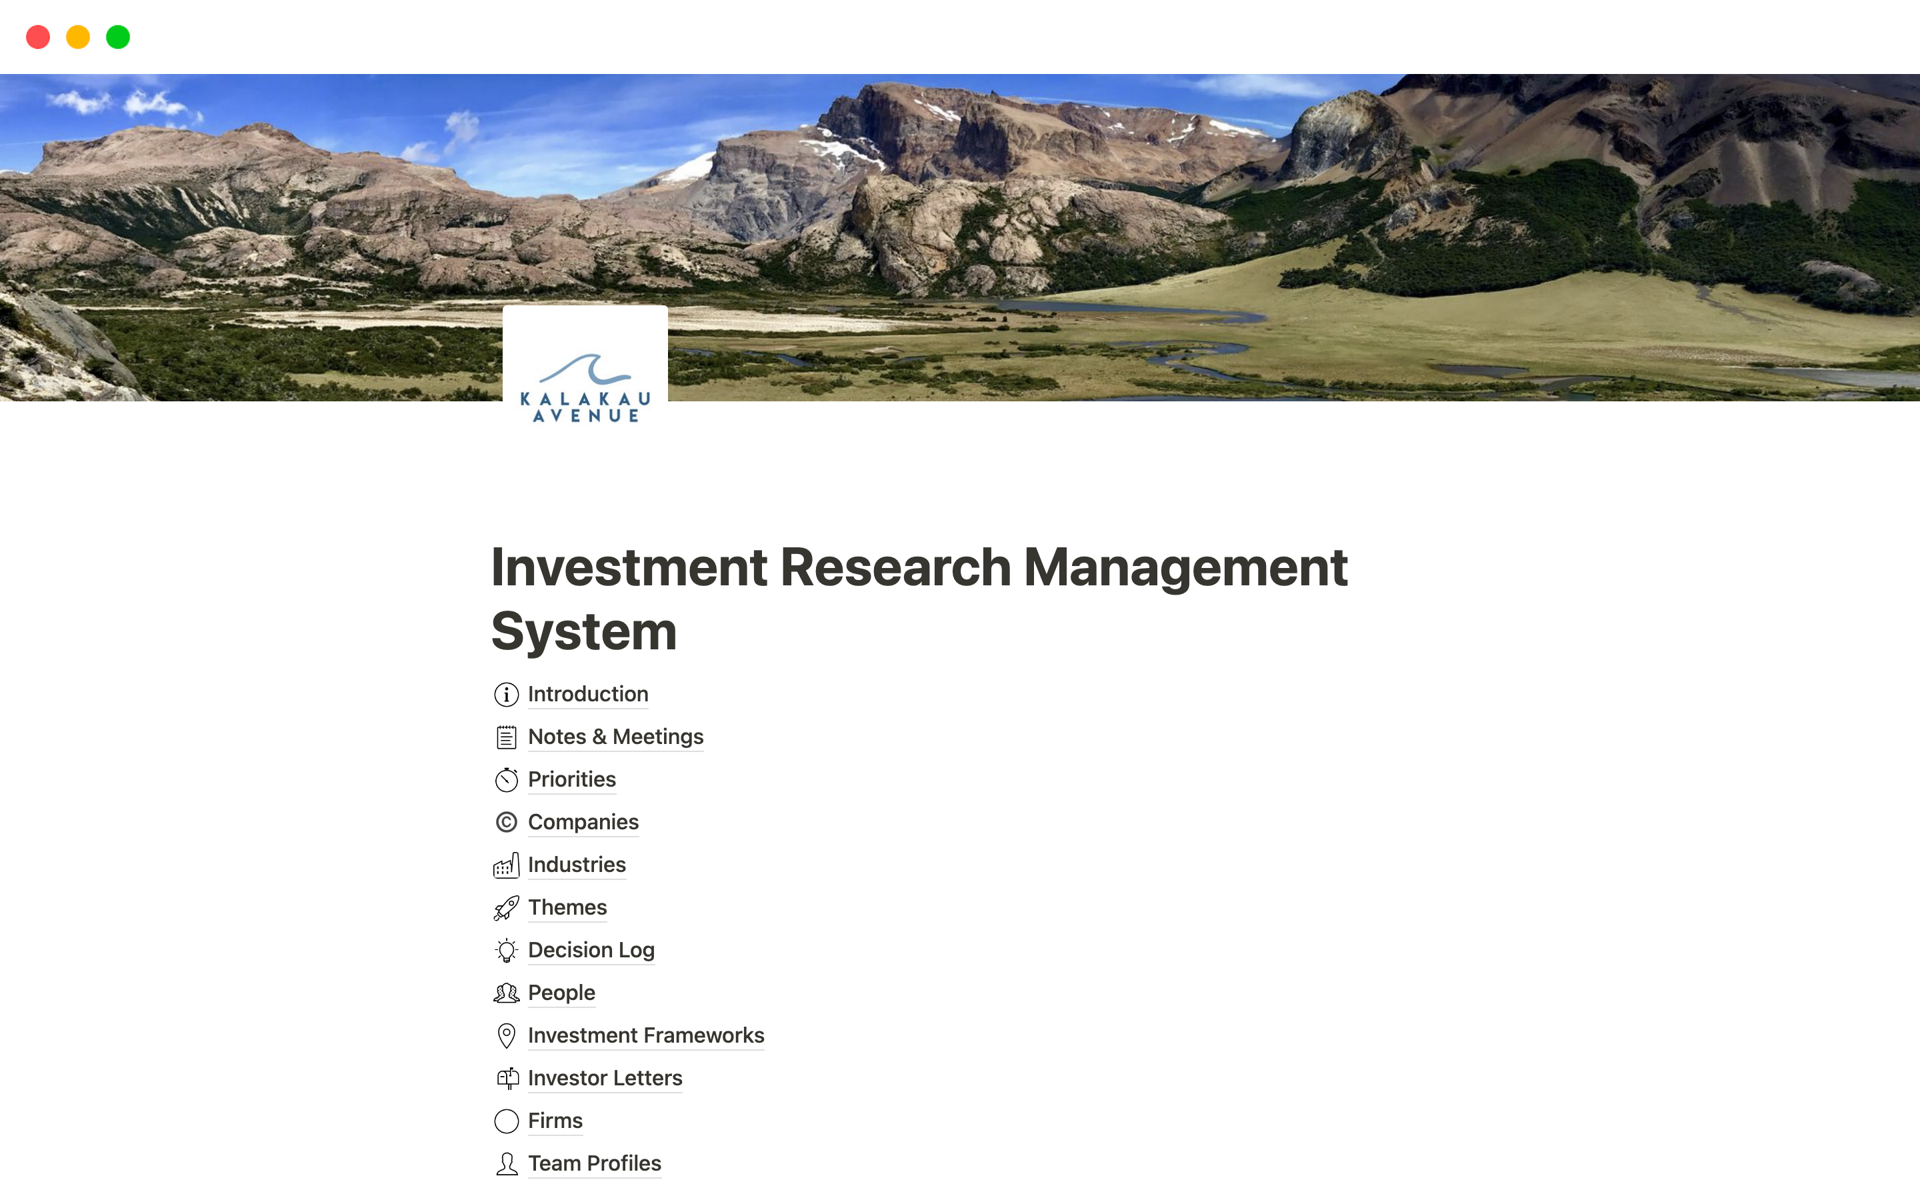 Uma prévia do modelo para Investment Research Management System